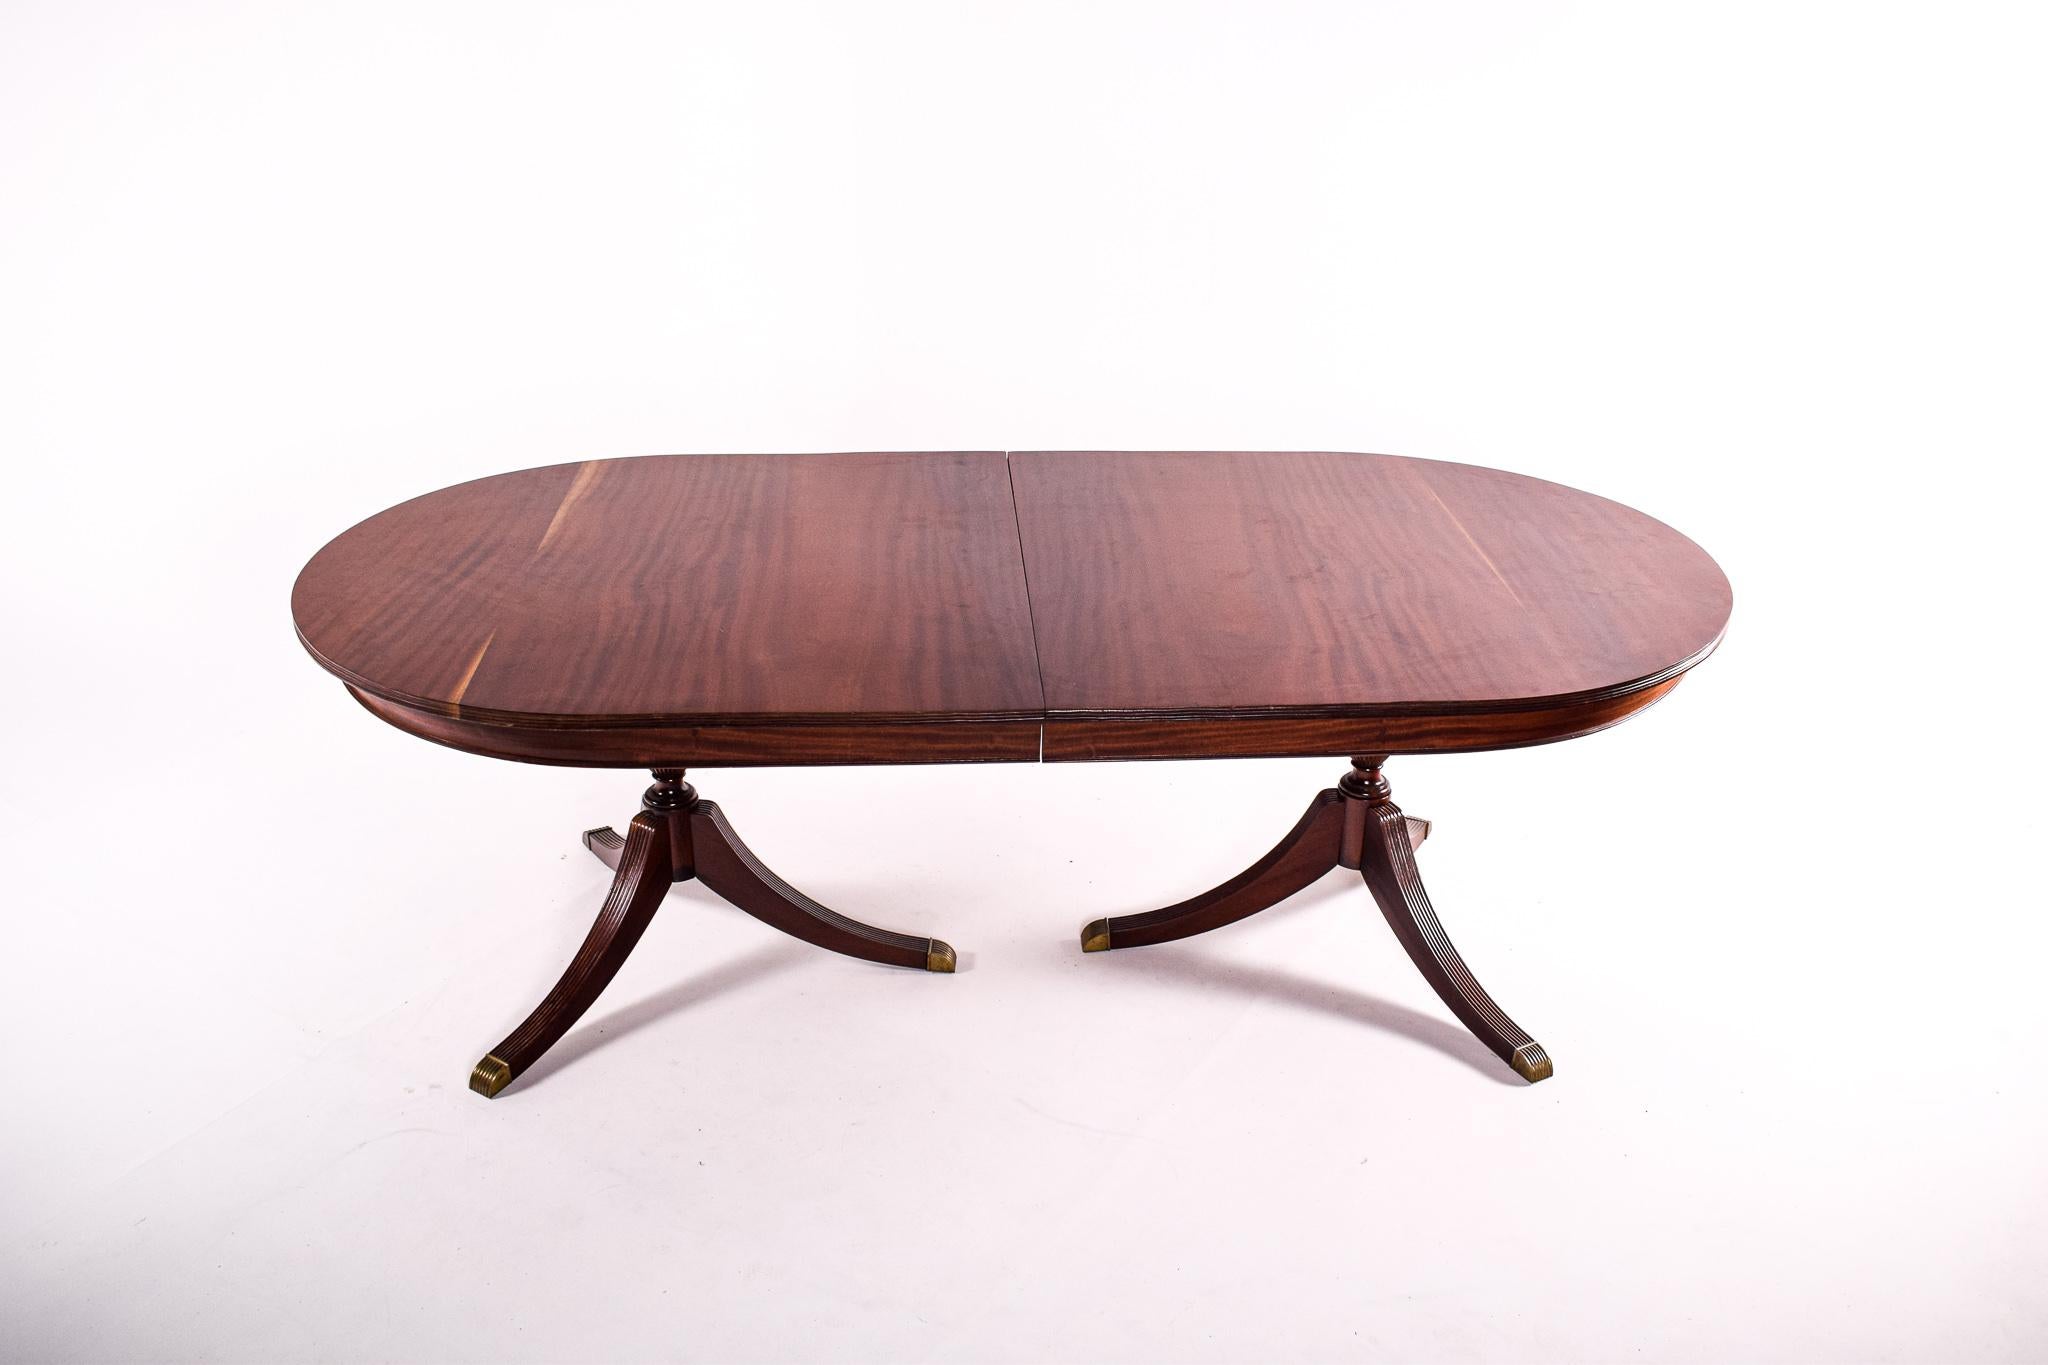  Dieser stattliche Esstisch ist eine moderne Hommage an das klassische Design des 18. Jahrhunderts in England. Der Tisch, der die Eleganz und Grandeur dieser Epoche widerspiegelt, hat eine großzügige ovale Mahagoni-Platte mit einer reichen Patina,